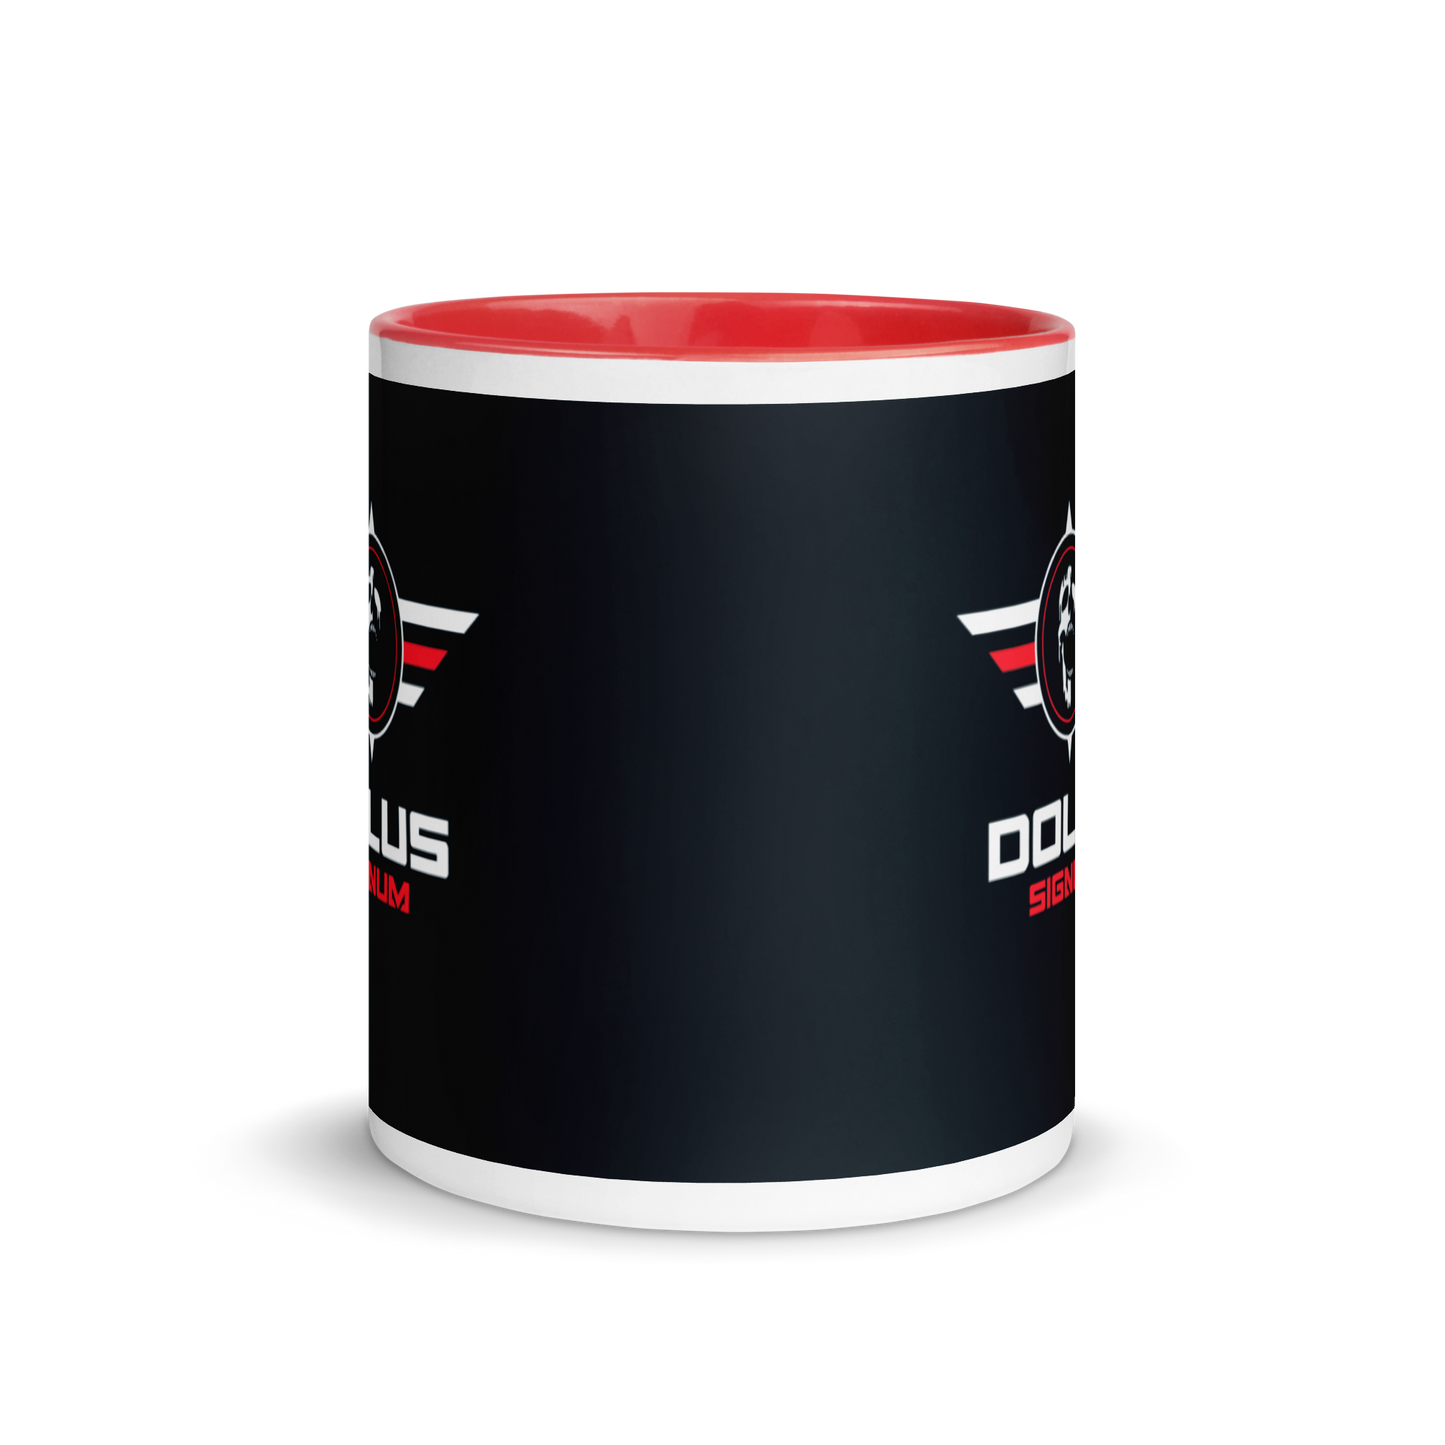 DOLUS SIGNUM Keramik-Tasse mit Logo und rotem Design